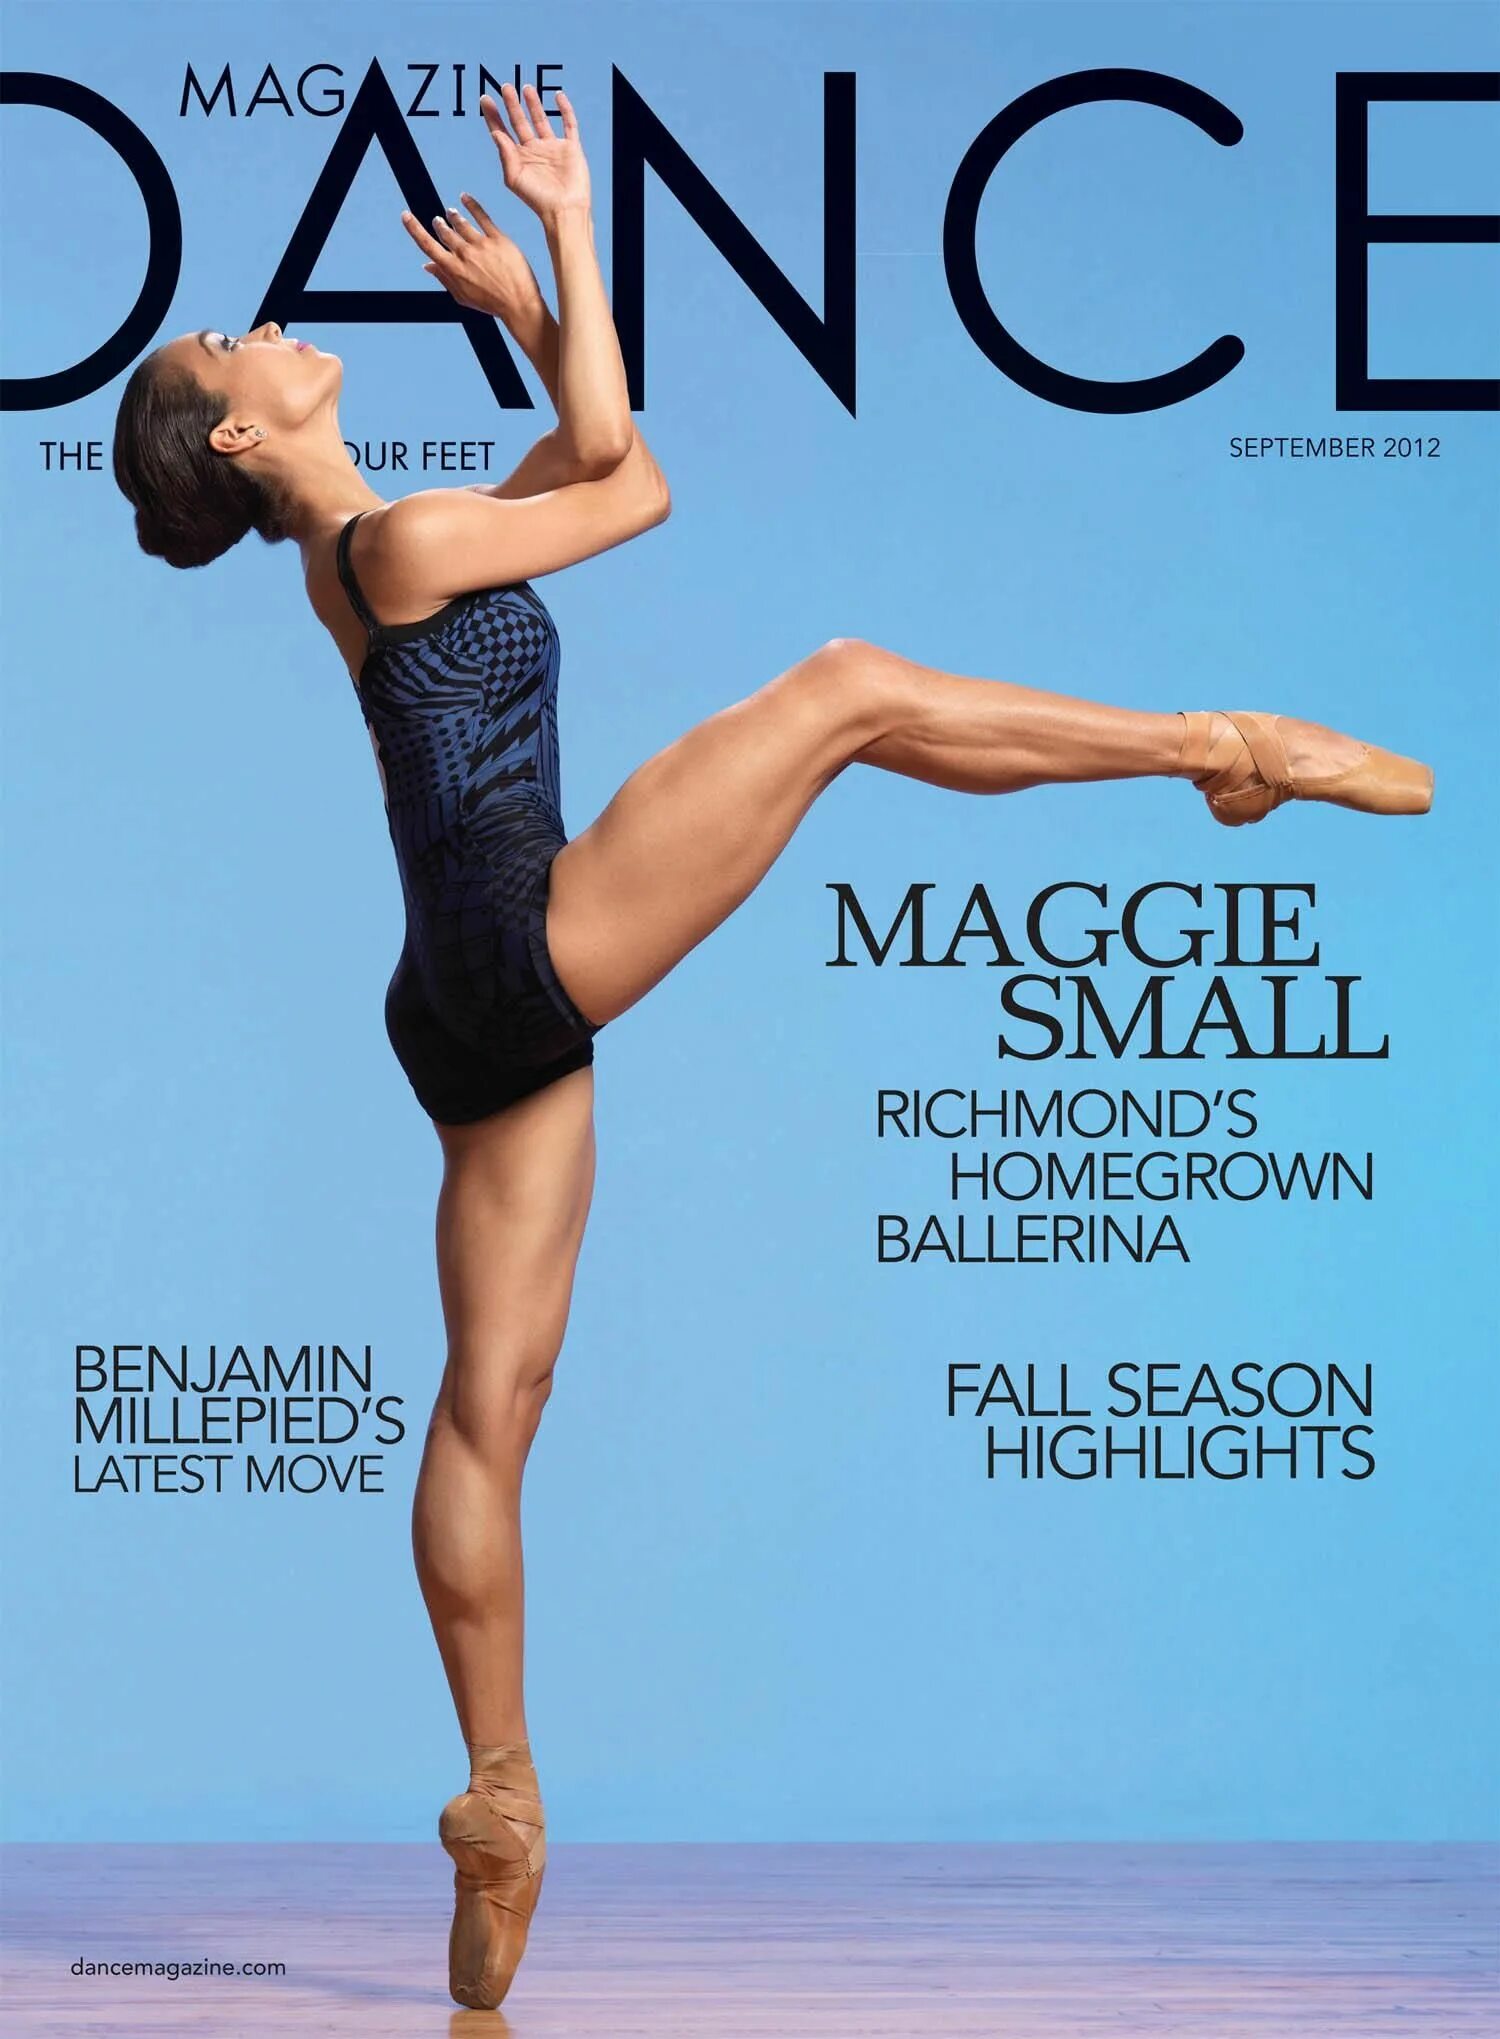 Dance обложка. Журнал про танцы. Обложка журнала про танцы. Журнал балет. Журнал балет обложка.